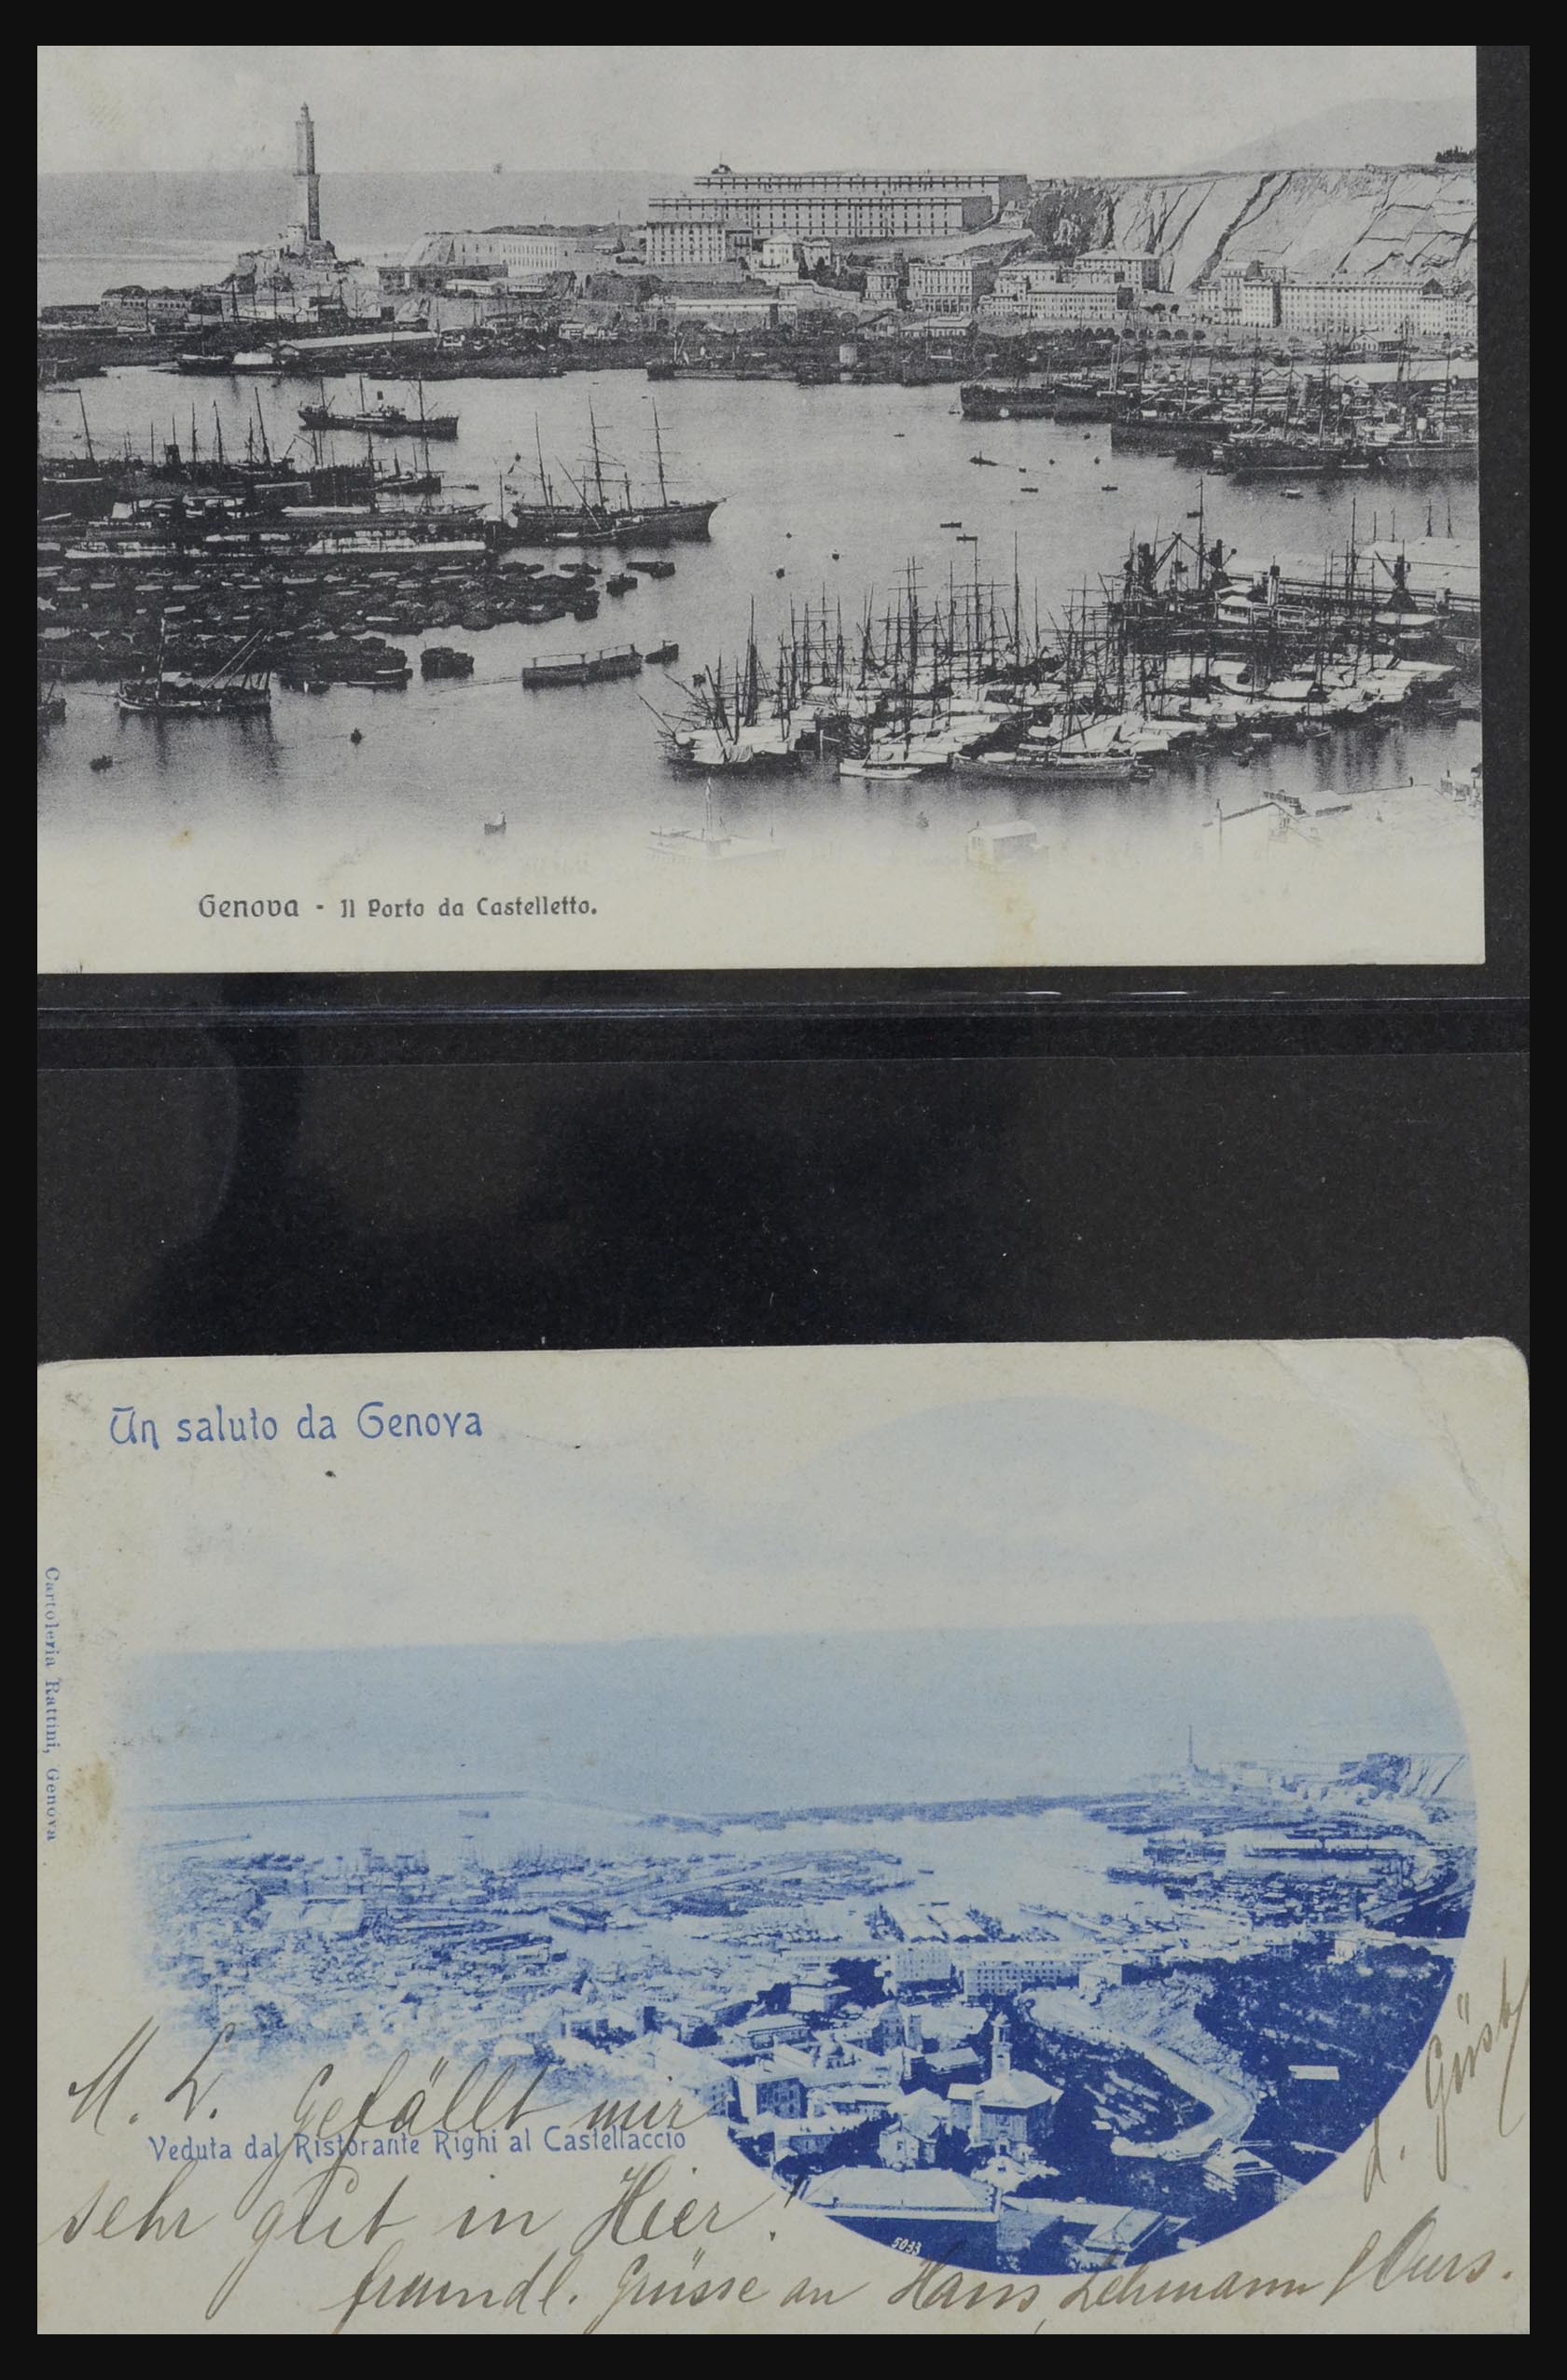 32255 0036 - 32255 Italië kaarten 1900-1945.